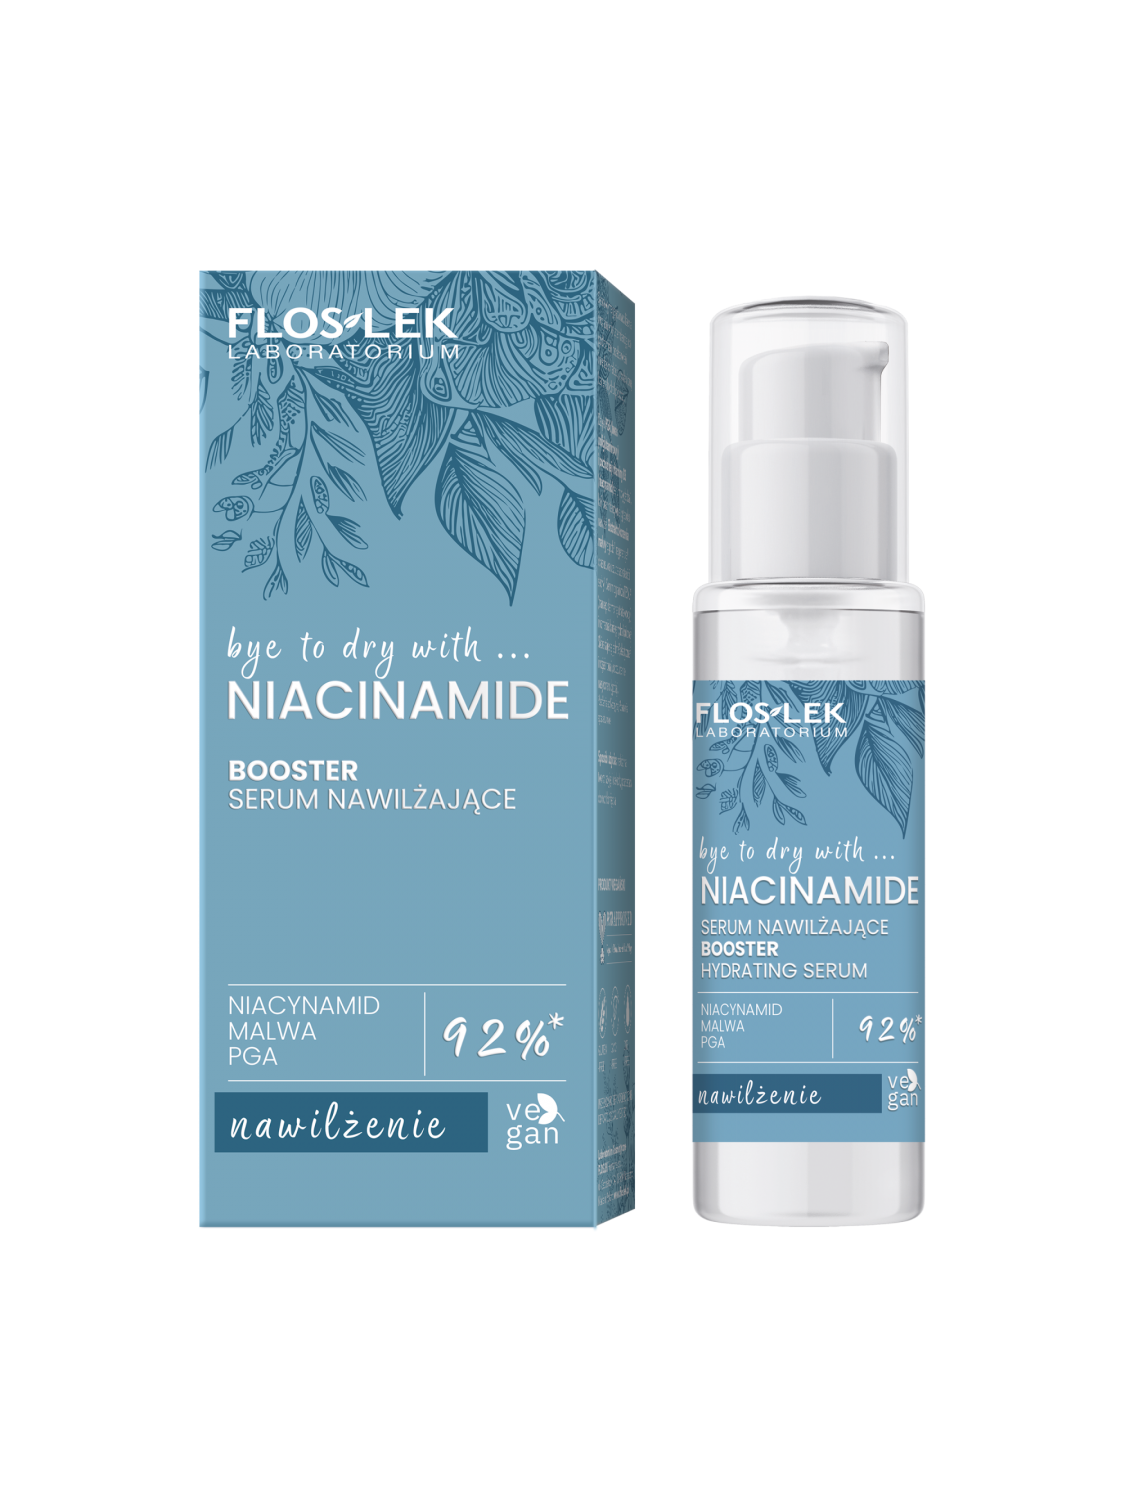 NIACINAMIDE BOOSTER moisturising serum 30 ml - Floslek